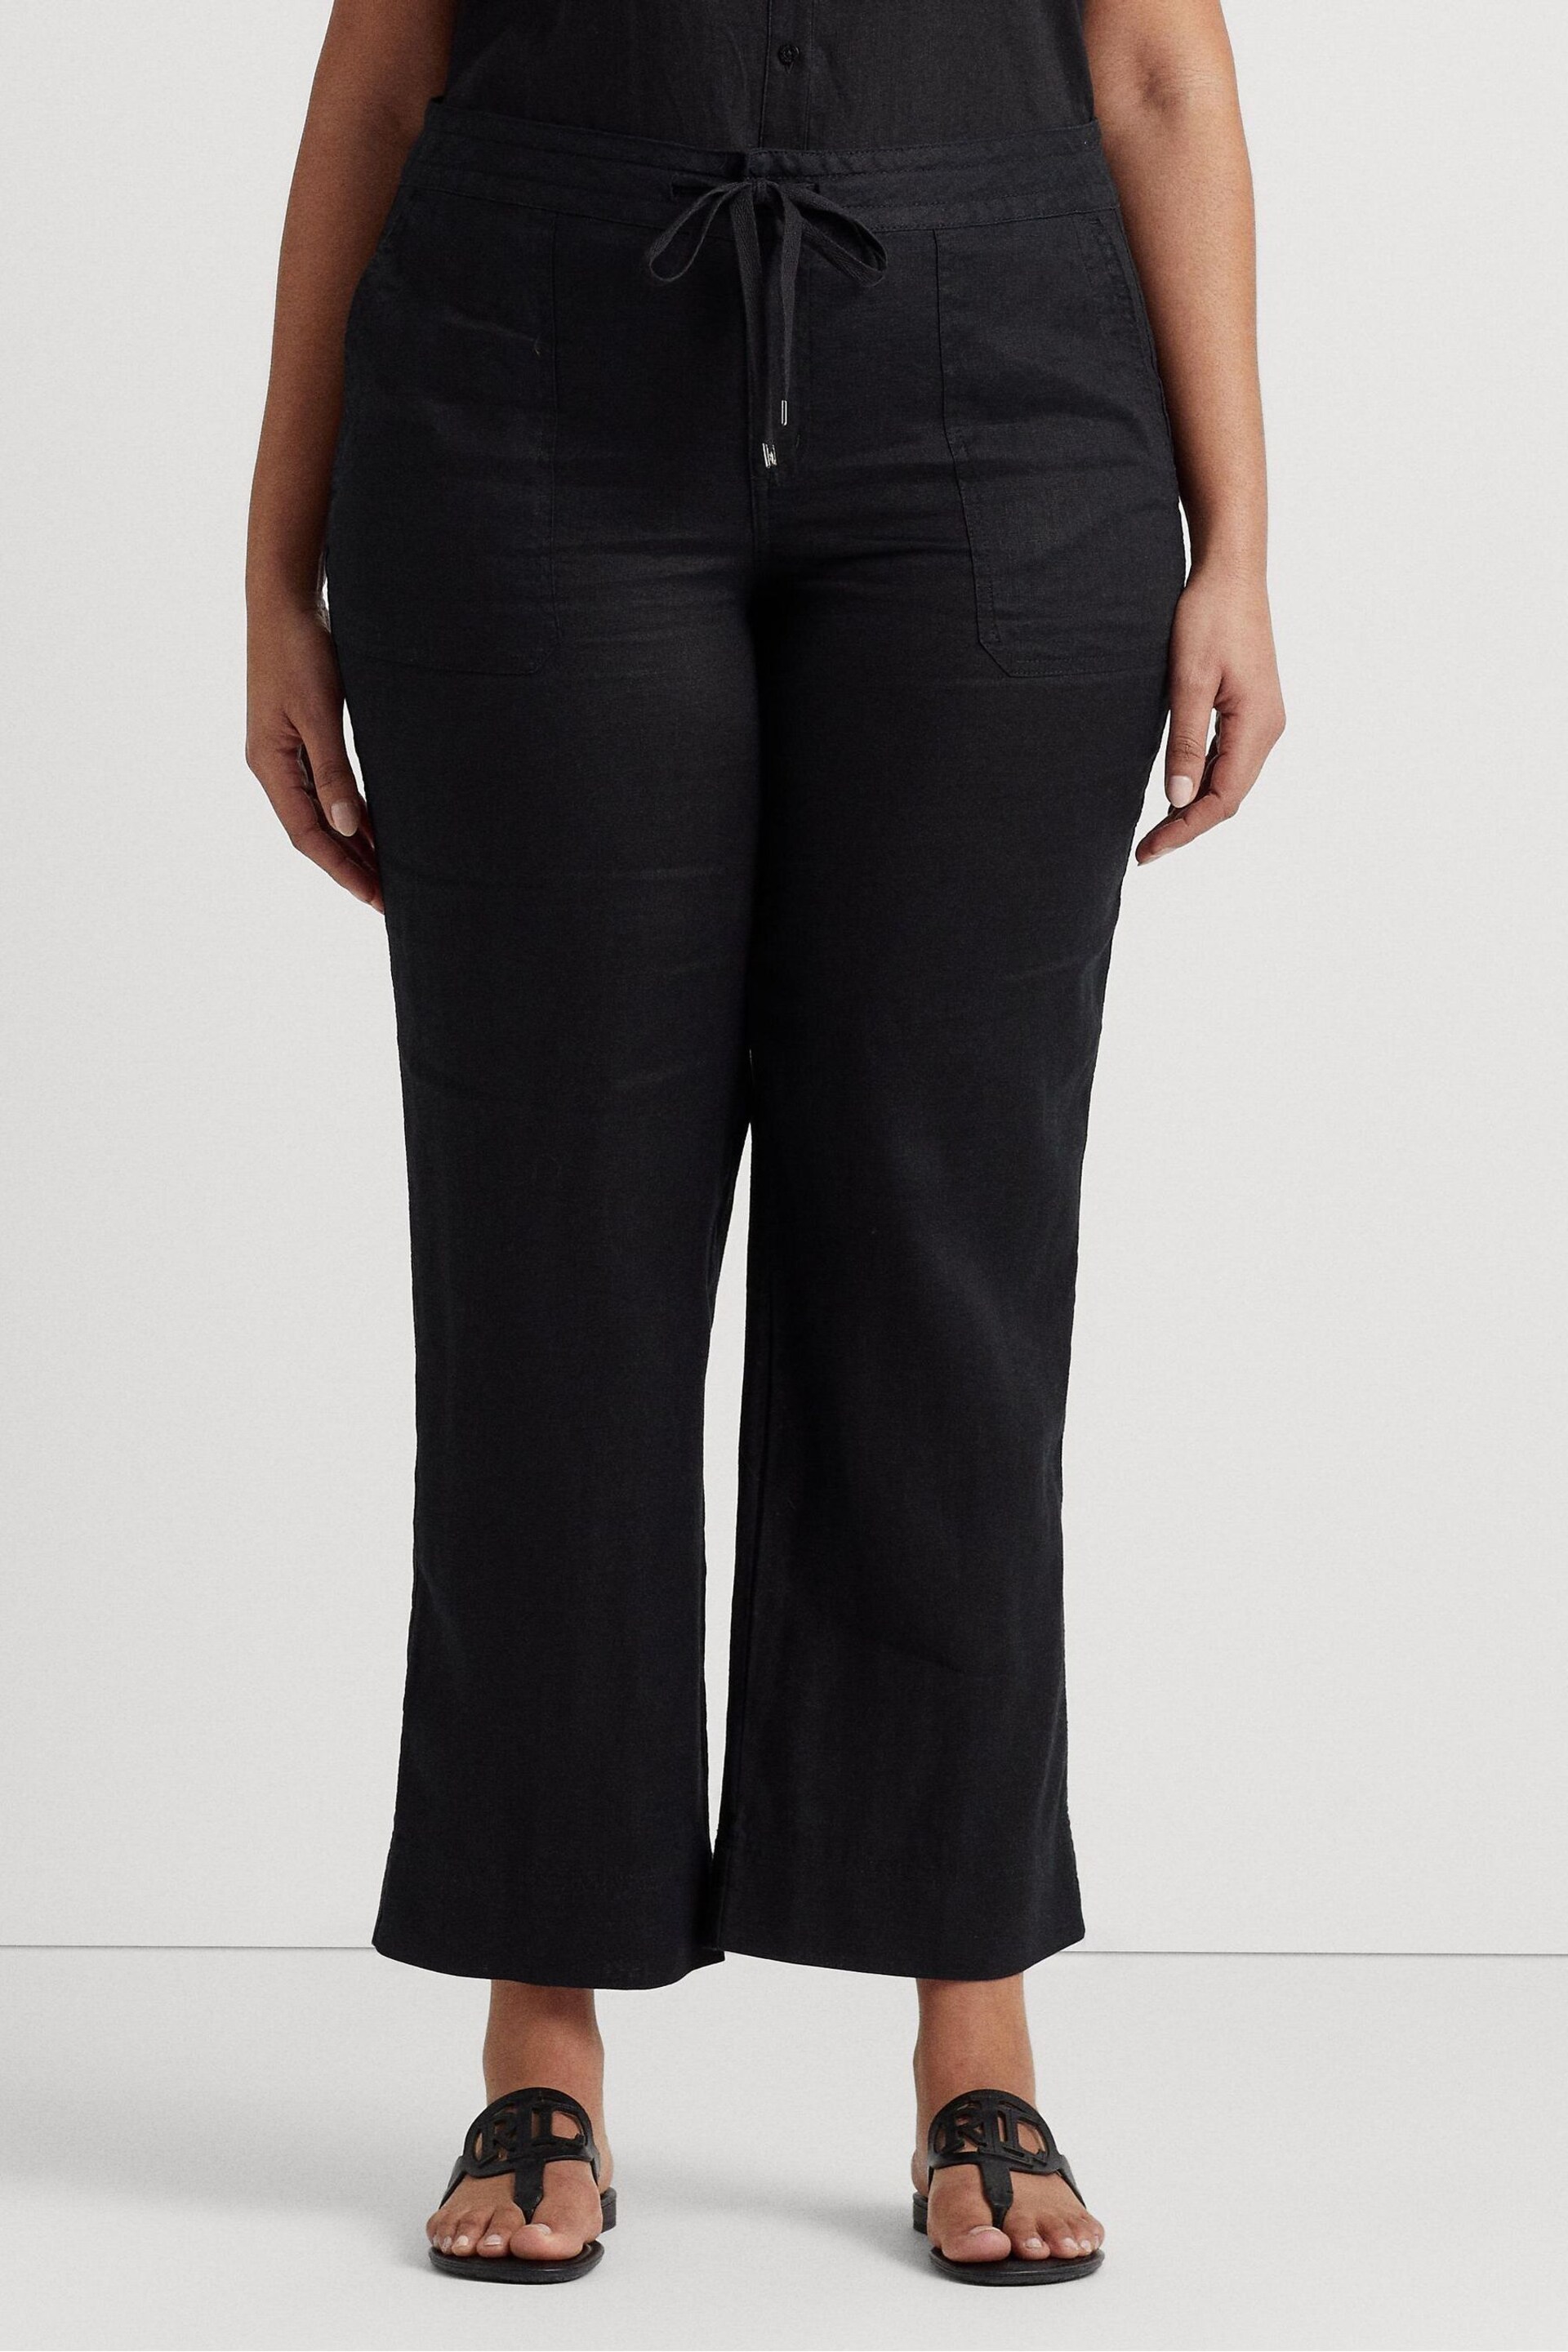 Lauren Ralph Lauren Curve Linen Drawstring Trousers - Image 1 of 8